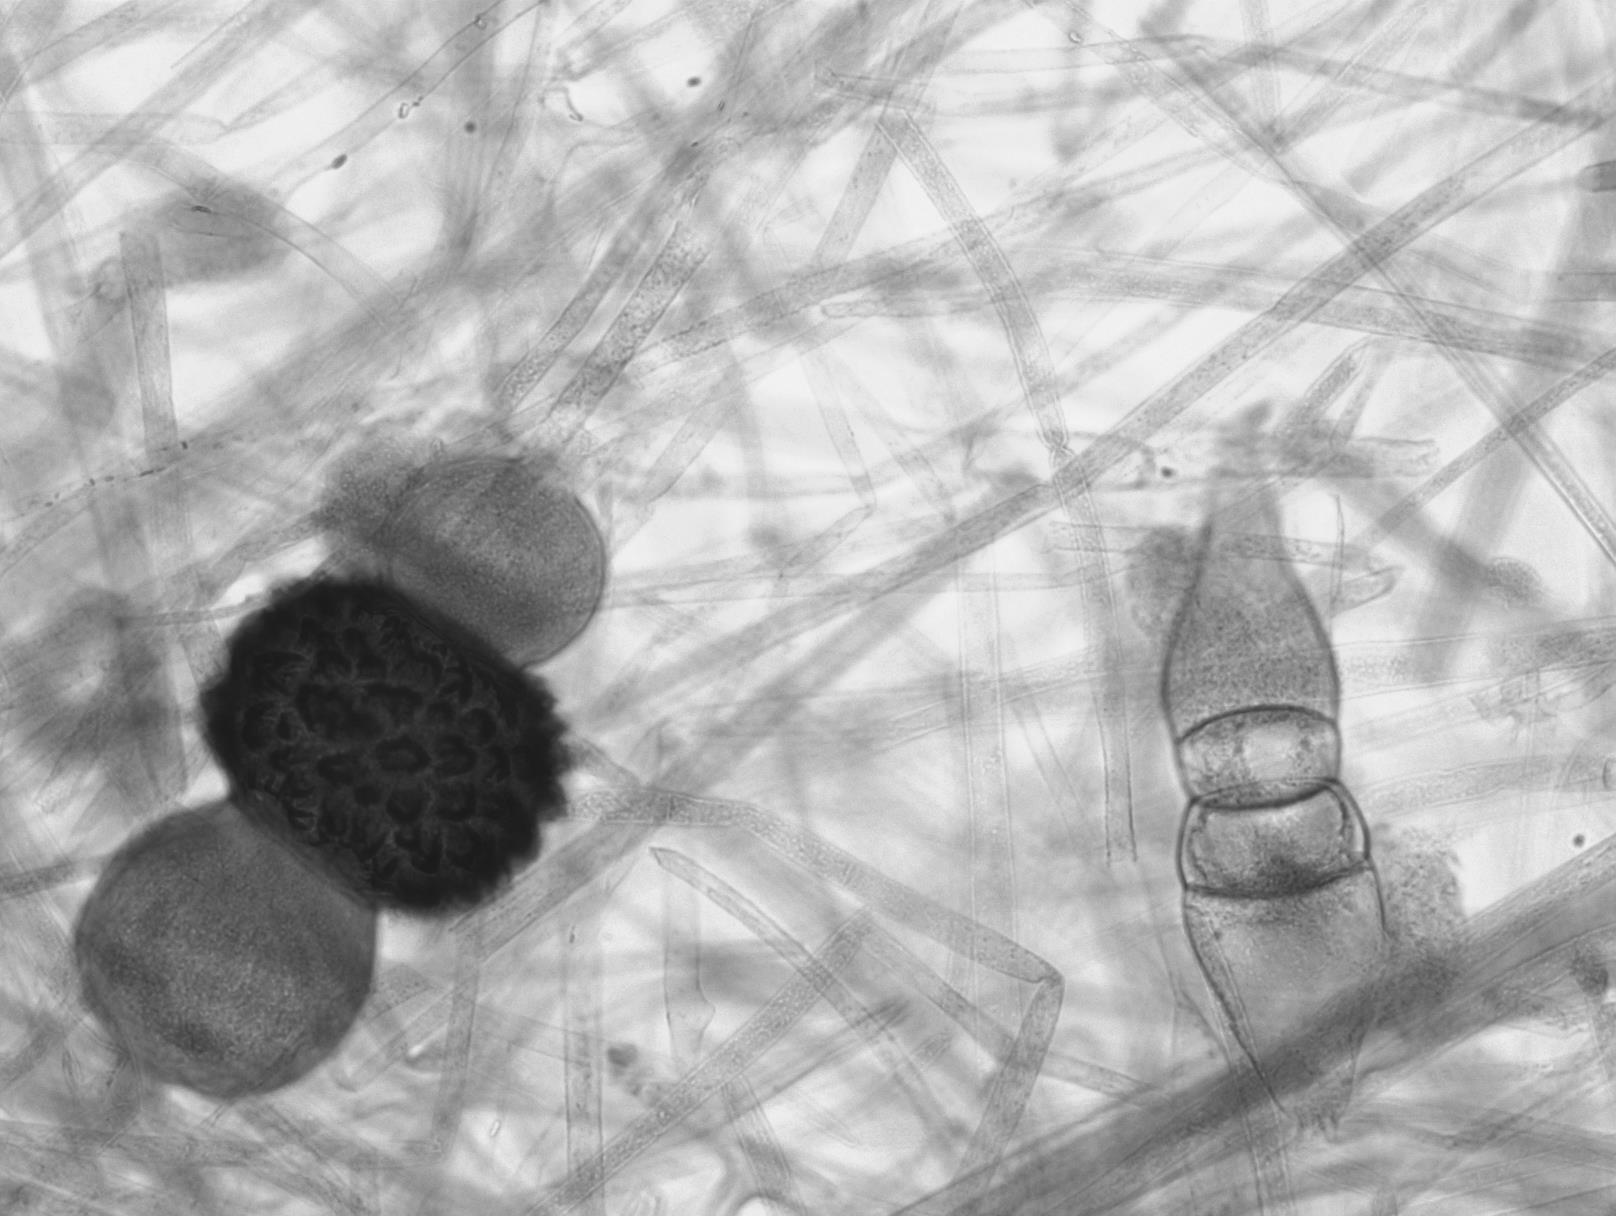 Rhizopus stolonifer formando cigosporangios